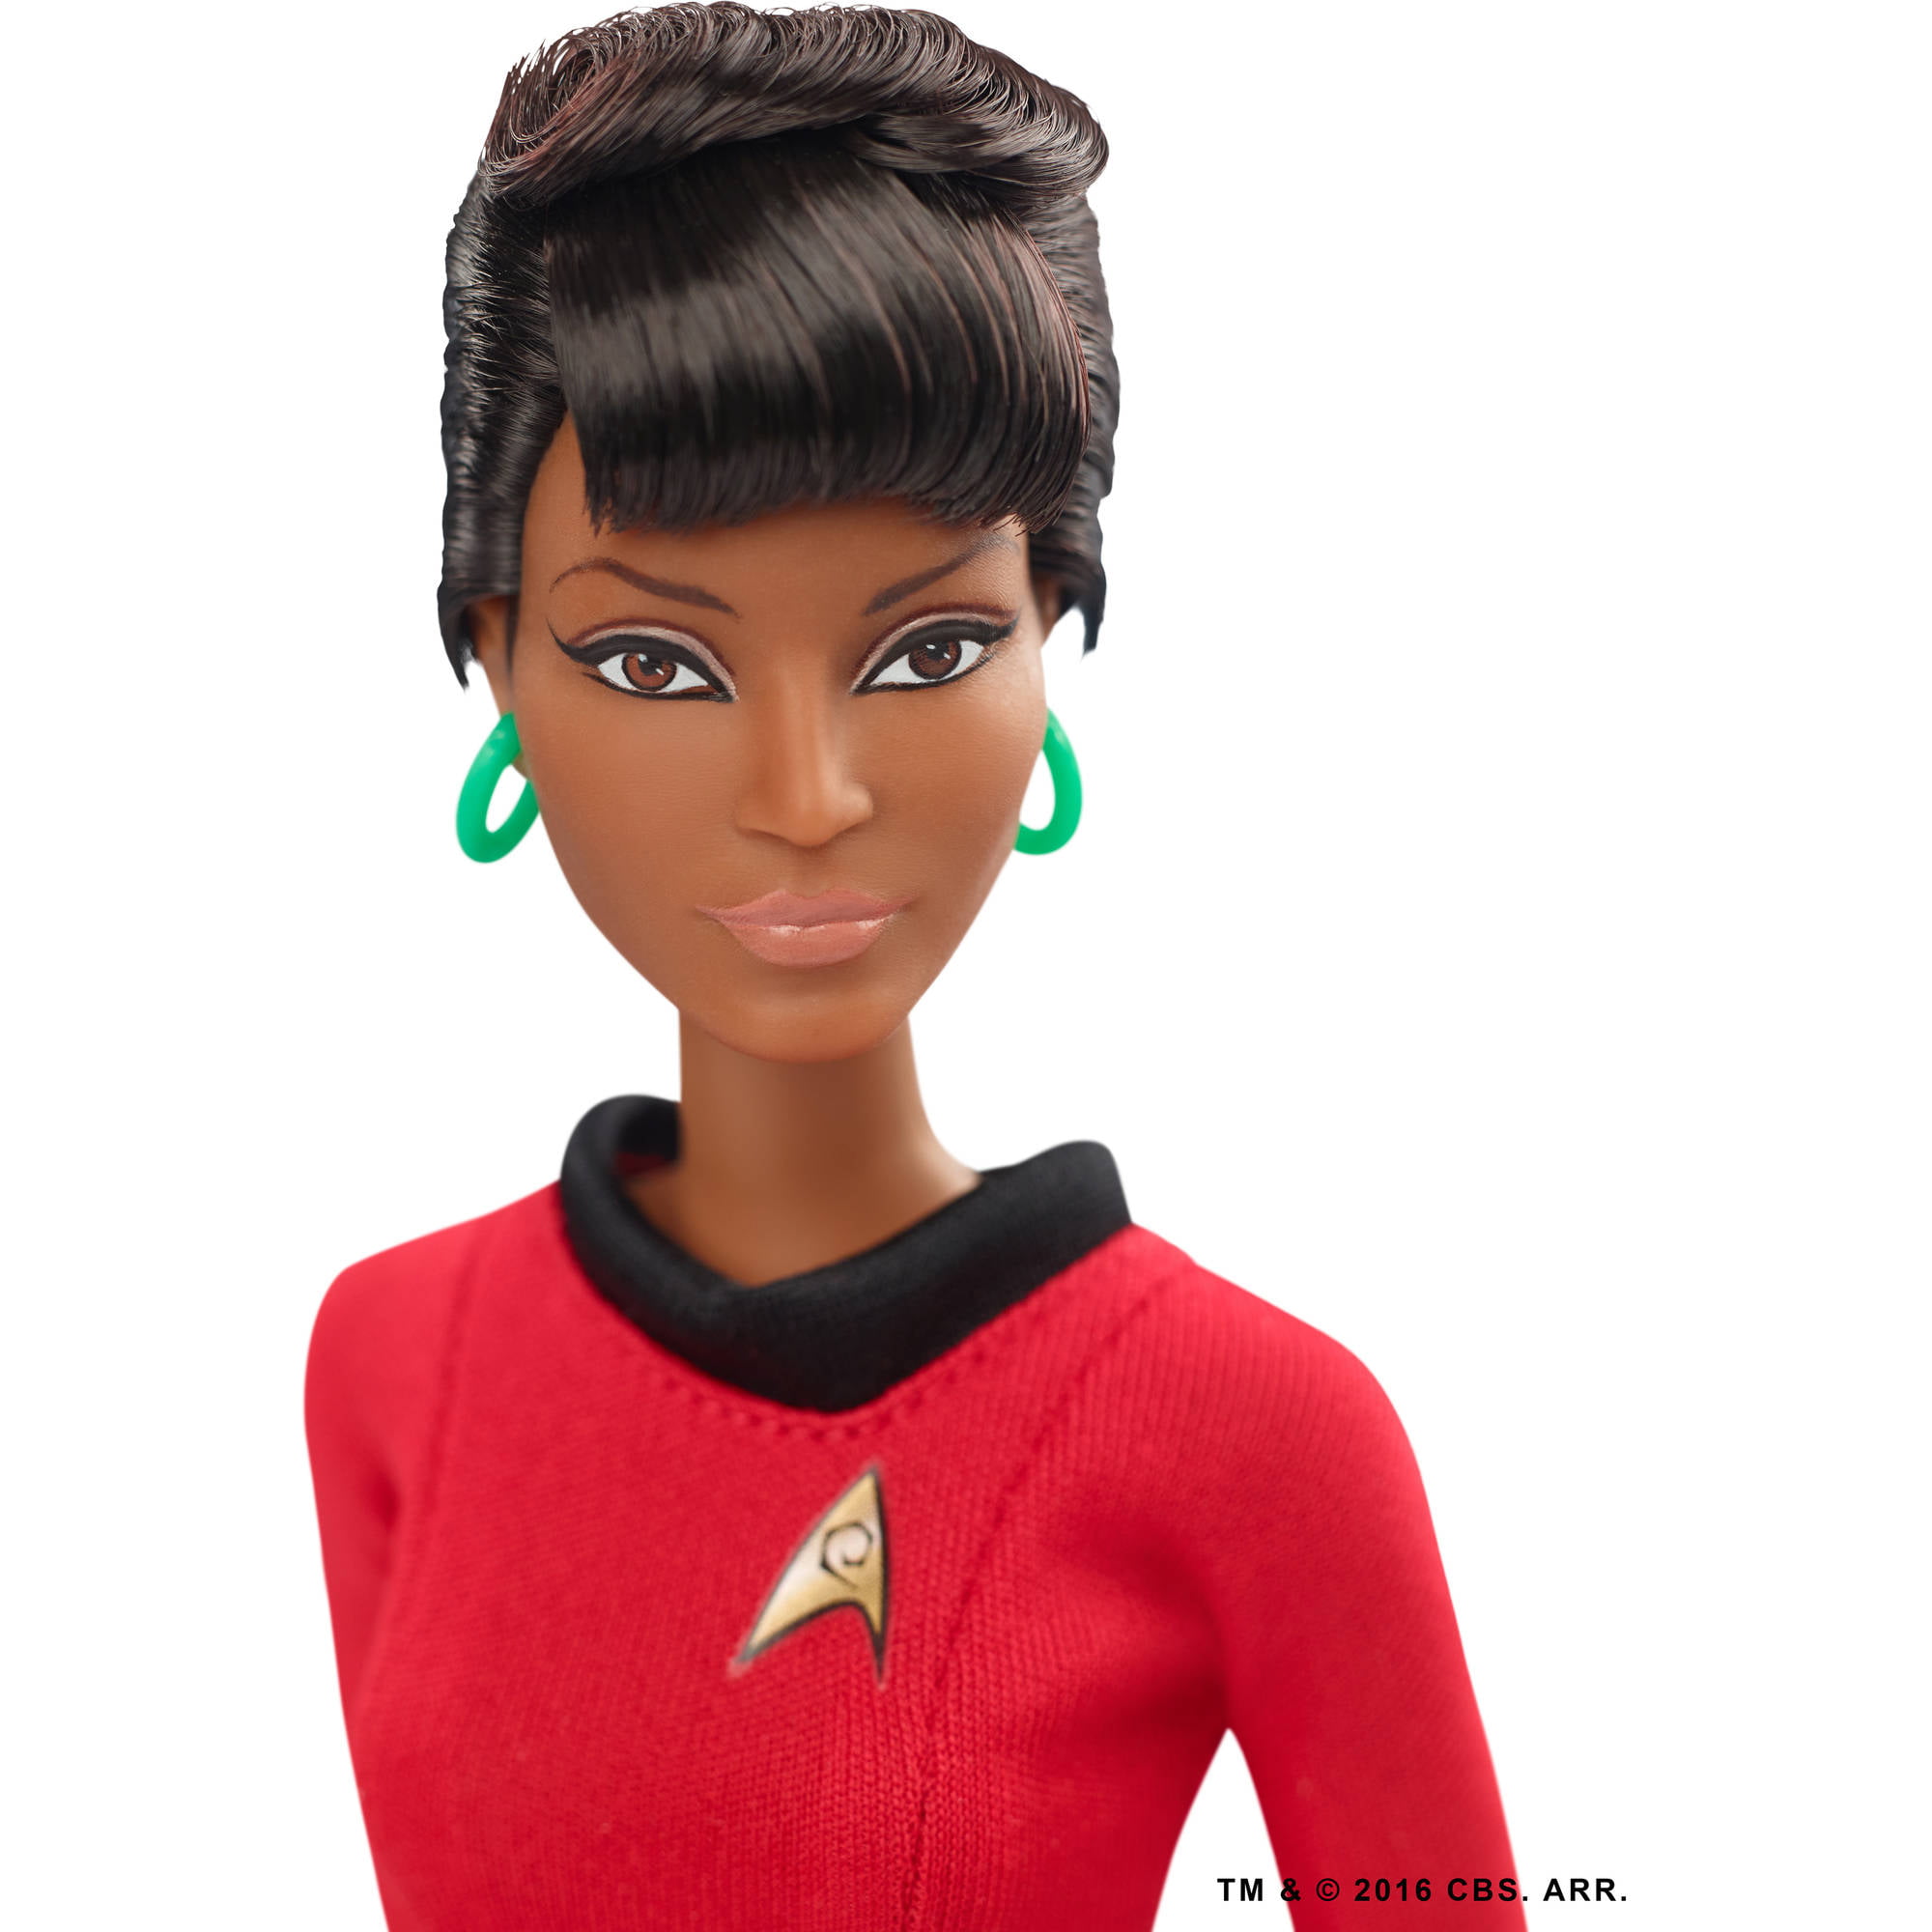 Barbie Star Trek 50th Anniversary Lt Uhura Doll Outfit Dress Uniform Boots NEW 